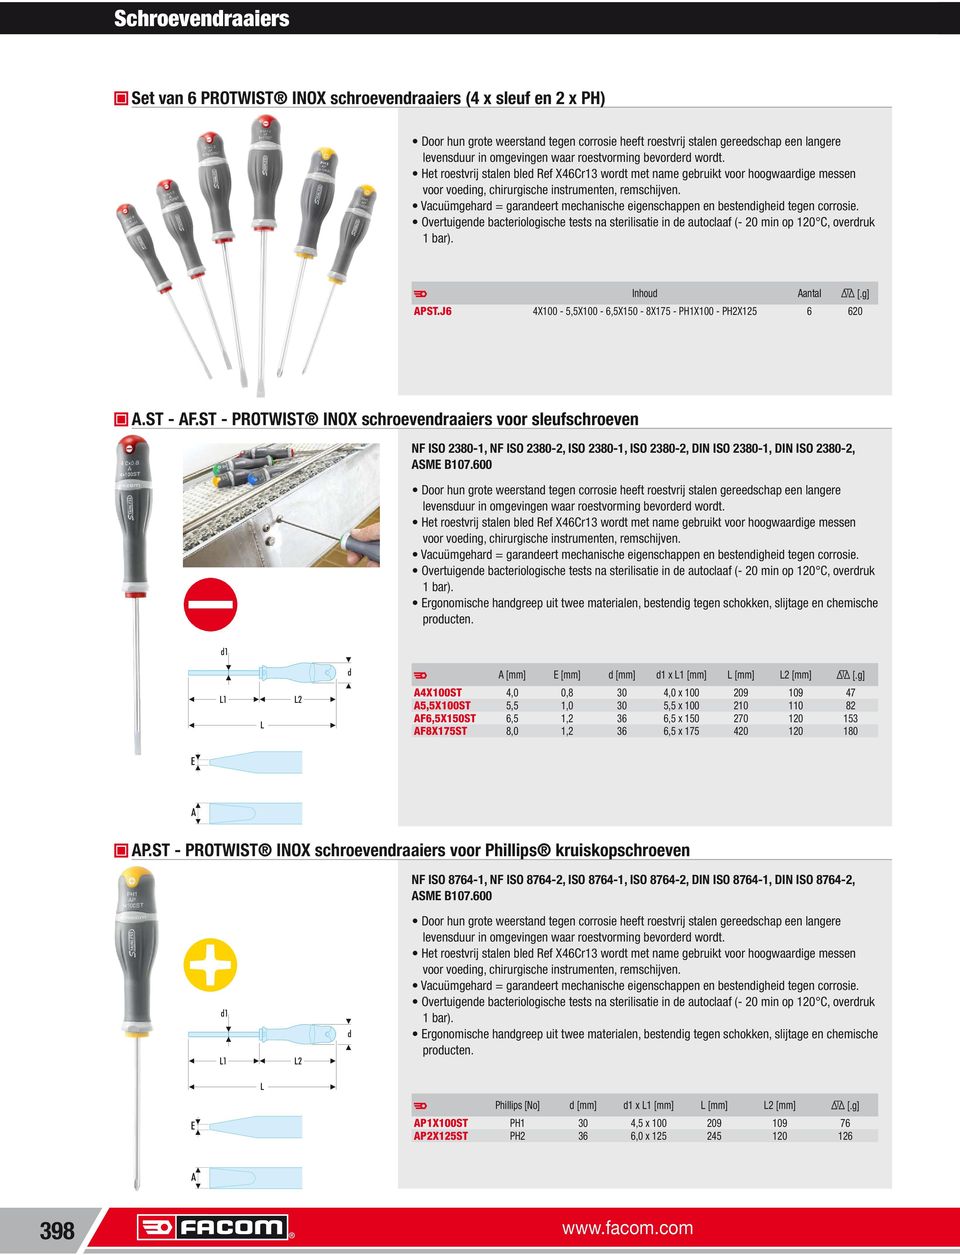 ST PROTWIST INOX schroevendraaiers voor sleufschroeven NF ISO 23801, NF ISO 23802, ISO 23801, ISO 23802, DIN ISO 23801, DIN ISO 23802, ASME B10.